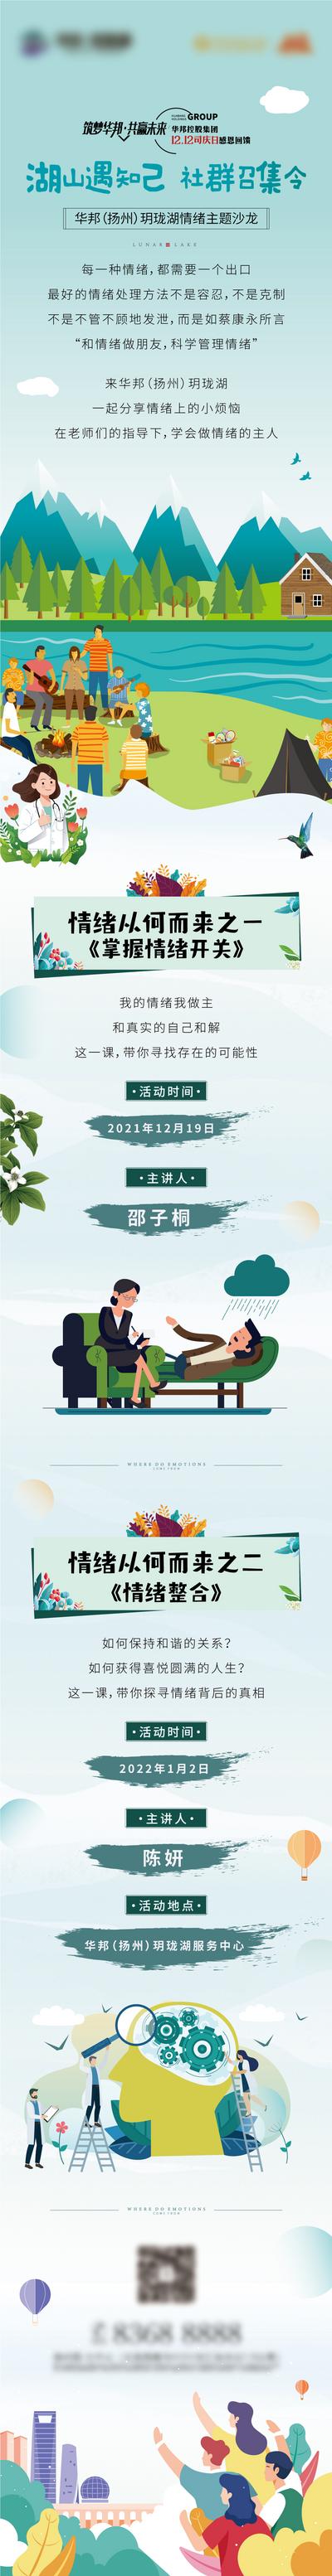 南门网 广告 海报 地产 长图 专题 地产 情绪 湖山 社群 沙龙 文旅